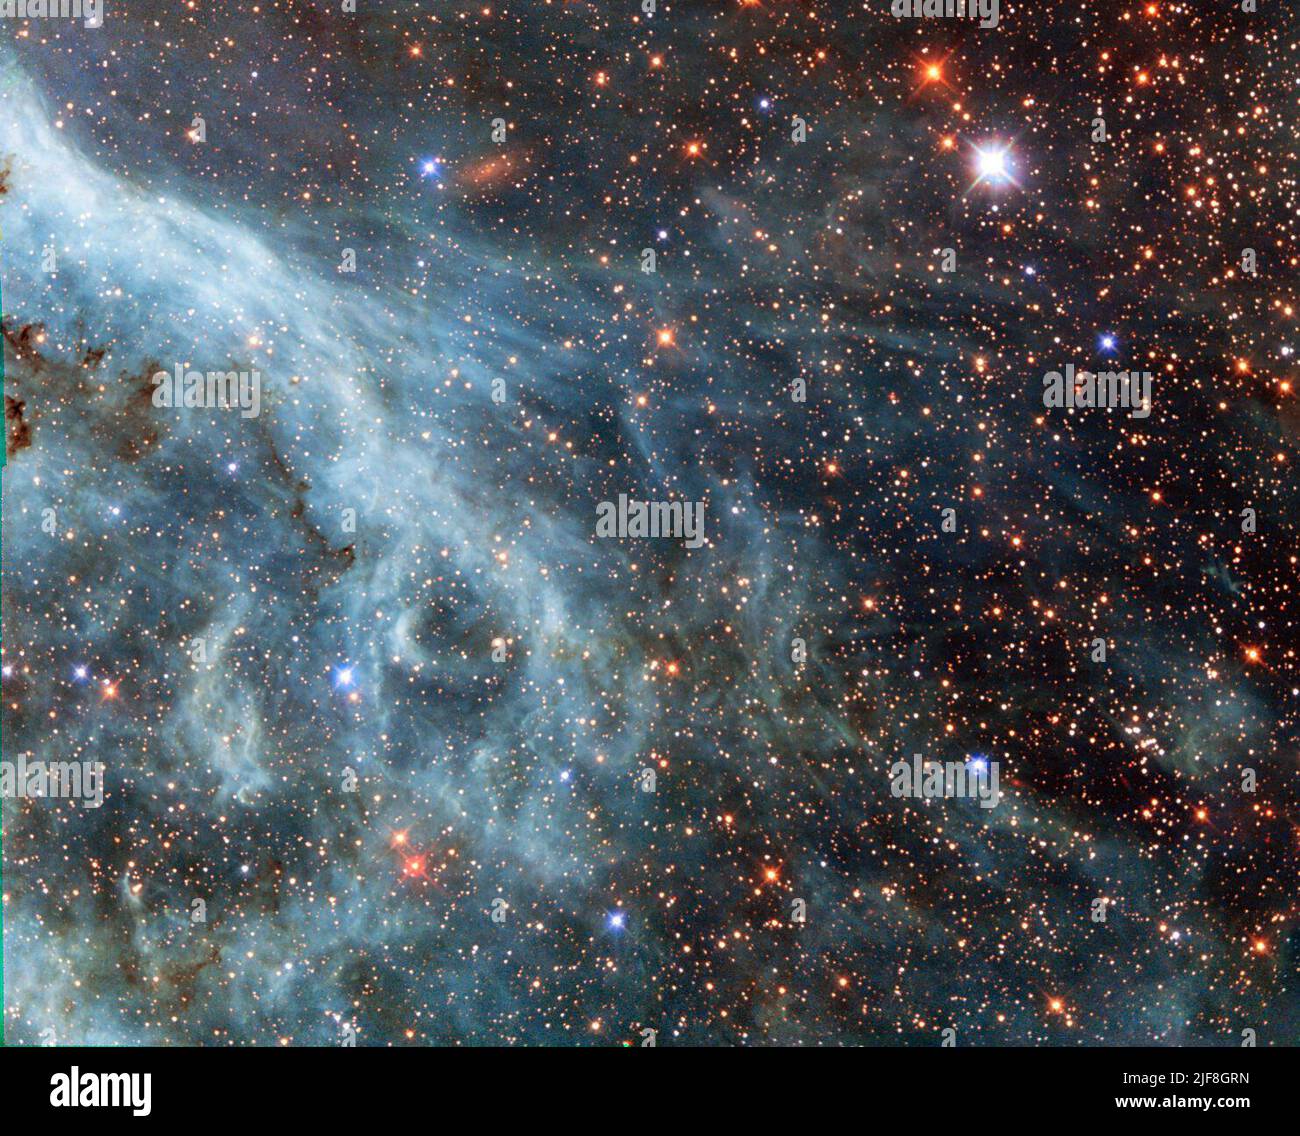 Espace. 13th octobre 2014. Les panaches lumineuses de cette image rappellent une scène sous-marine, avec des courants turquoises et des fils nébuleux qui s'explorent dans les environs. Cependant, ce n'est pas un océan. Cette image montre en fait une partie du grand nuage Magellanique (LMC), une petite galaxie voisine qui orbite notre galaxie, la voie lactée, et apparaît comme un blob flou dans nos cieux. Le télescope spatial Hubble NASA/ESA a fait un grand nombre de pas dans cette galaxie, libérant des images époustouflantes des nuages de gaz et des étoiles étincelantes (opo9944a, heic1301, potw1408a). Cette image s'affiche Banque D'Images